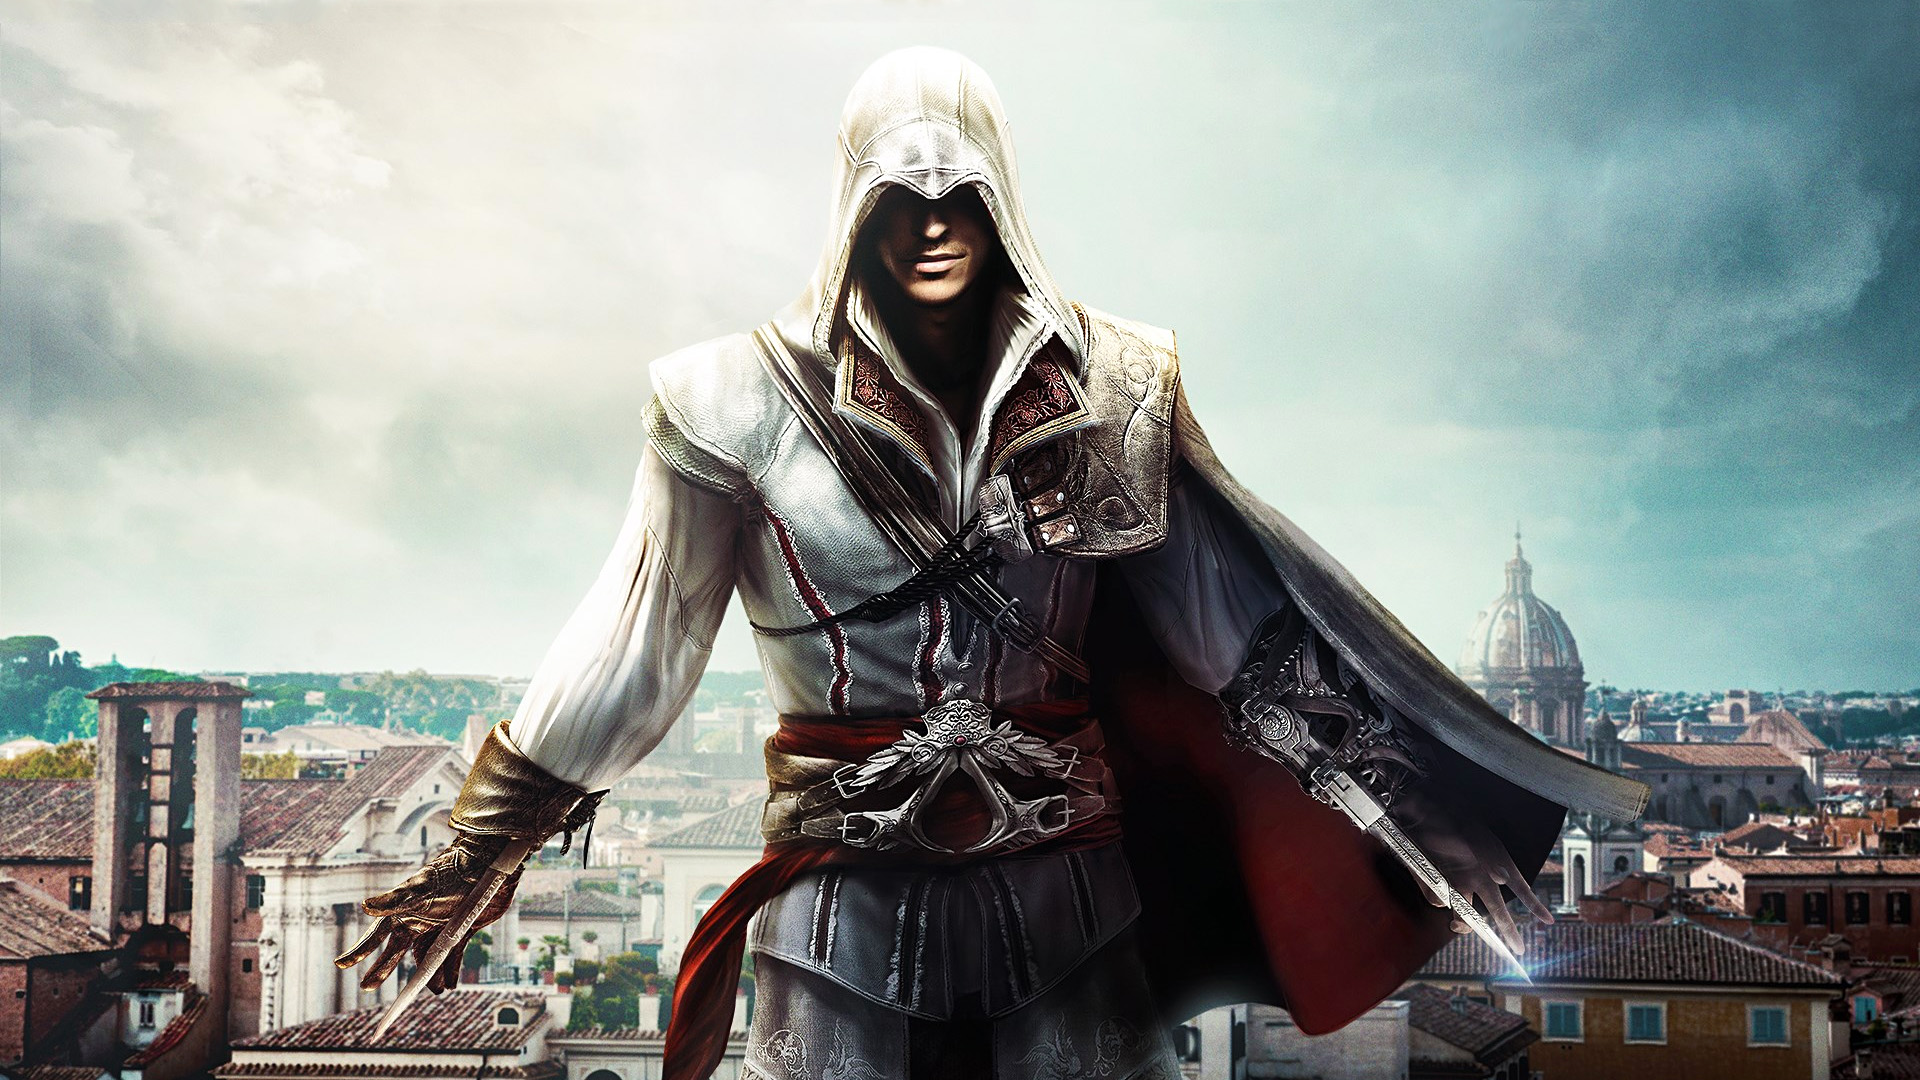 แพ็คมัดรวม Assassin's Creed ไตรภาค Ezio นักฆ่าในตำนานที่สุดตลอดกาลเตรียมวางขายบน Switch วันที่ 17 กุมภาพันธ์นี้